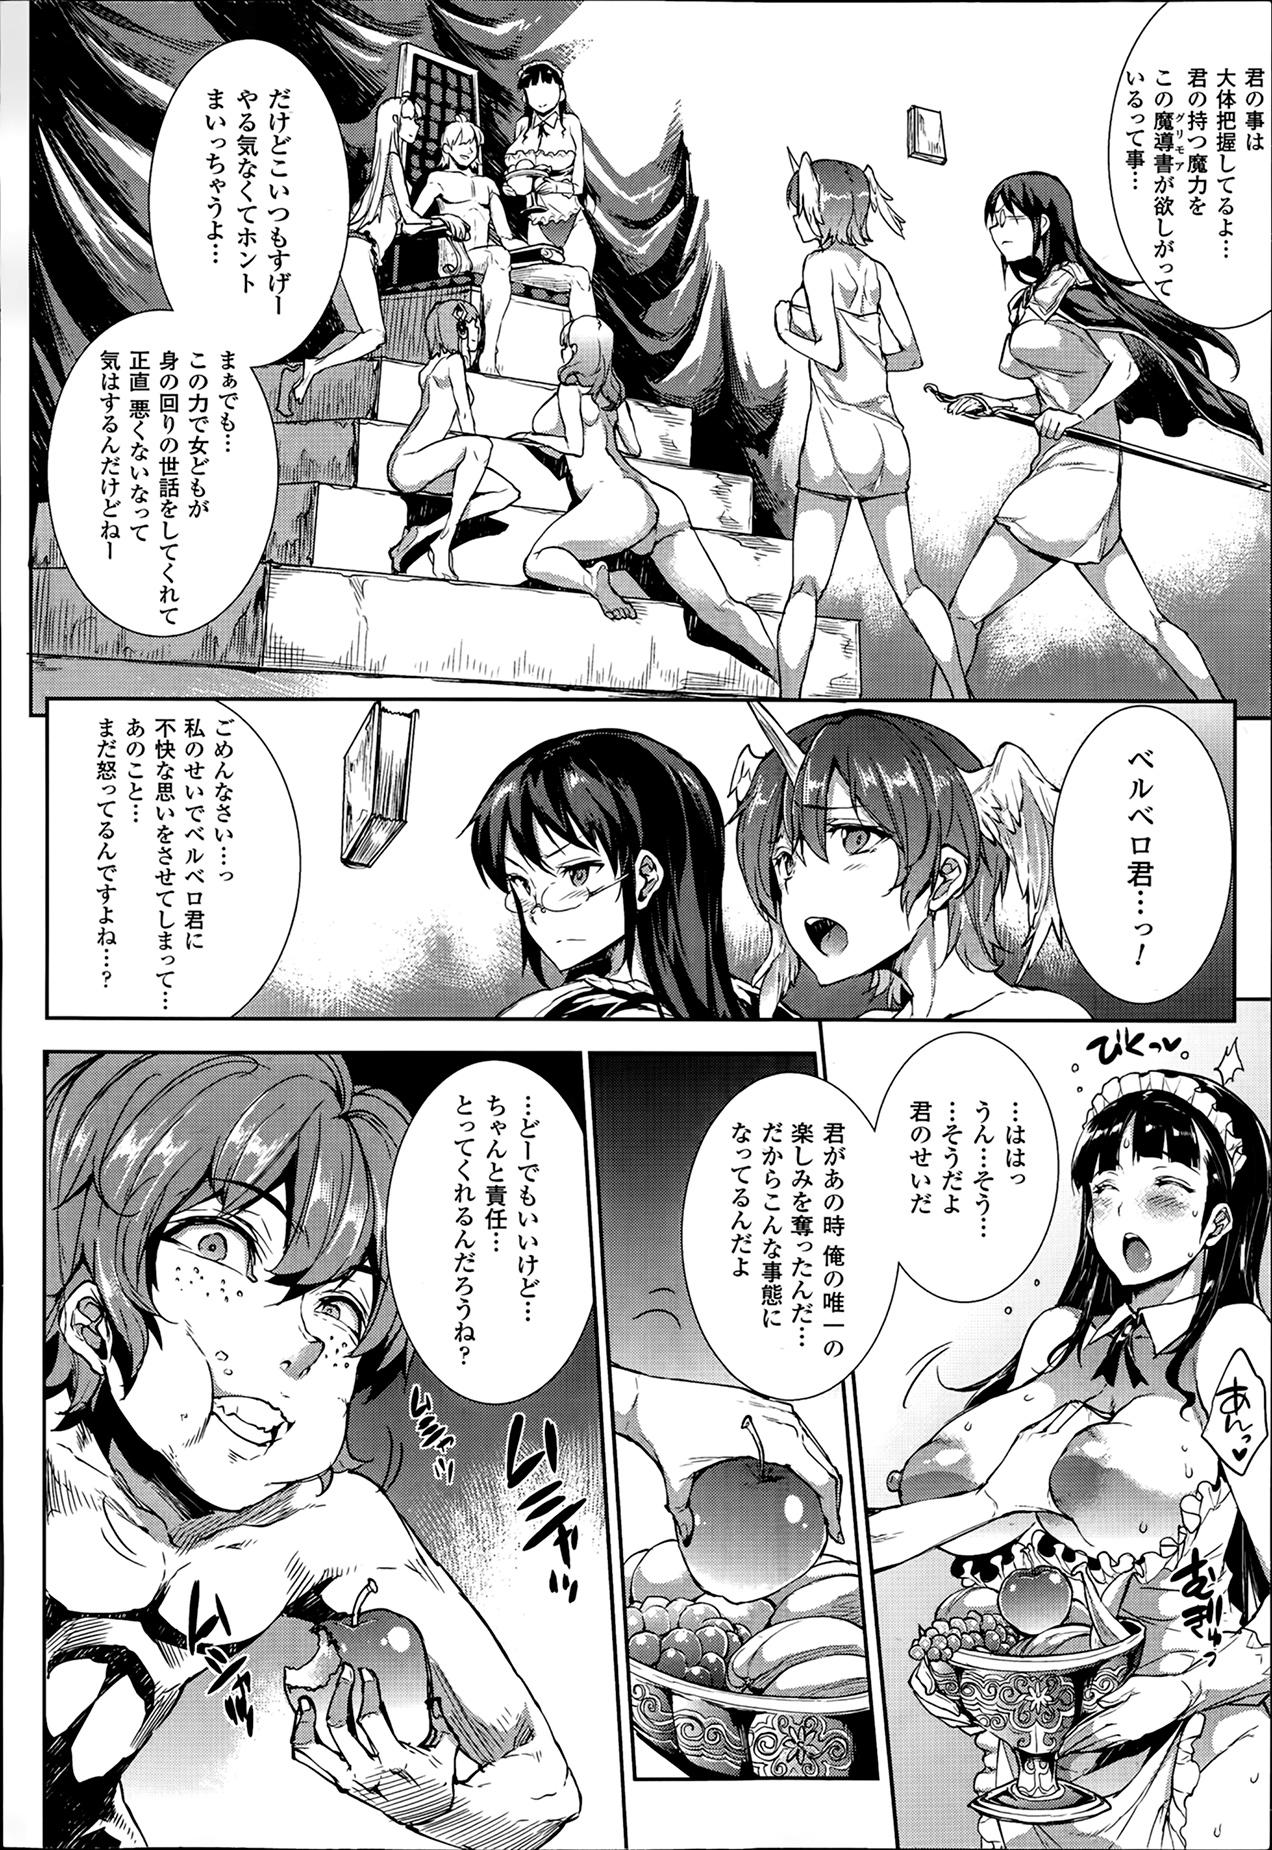 [Erect Sawaru] Shinkyoku no Grimoire -PANDRA saga 2nd story- Ch. 7-12 108